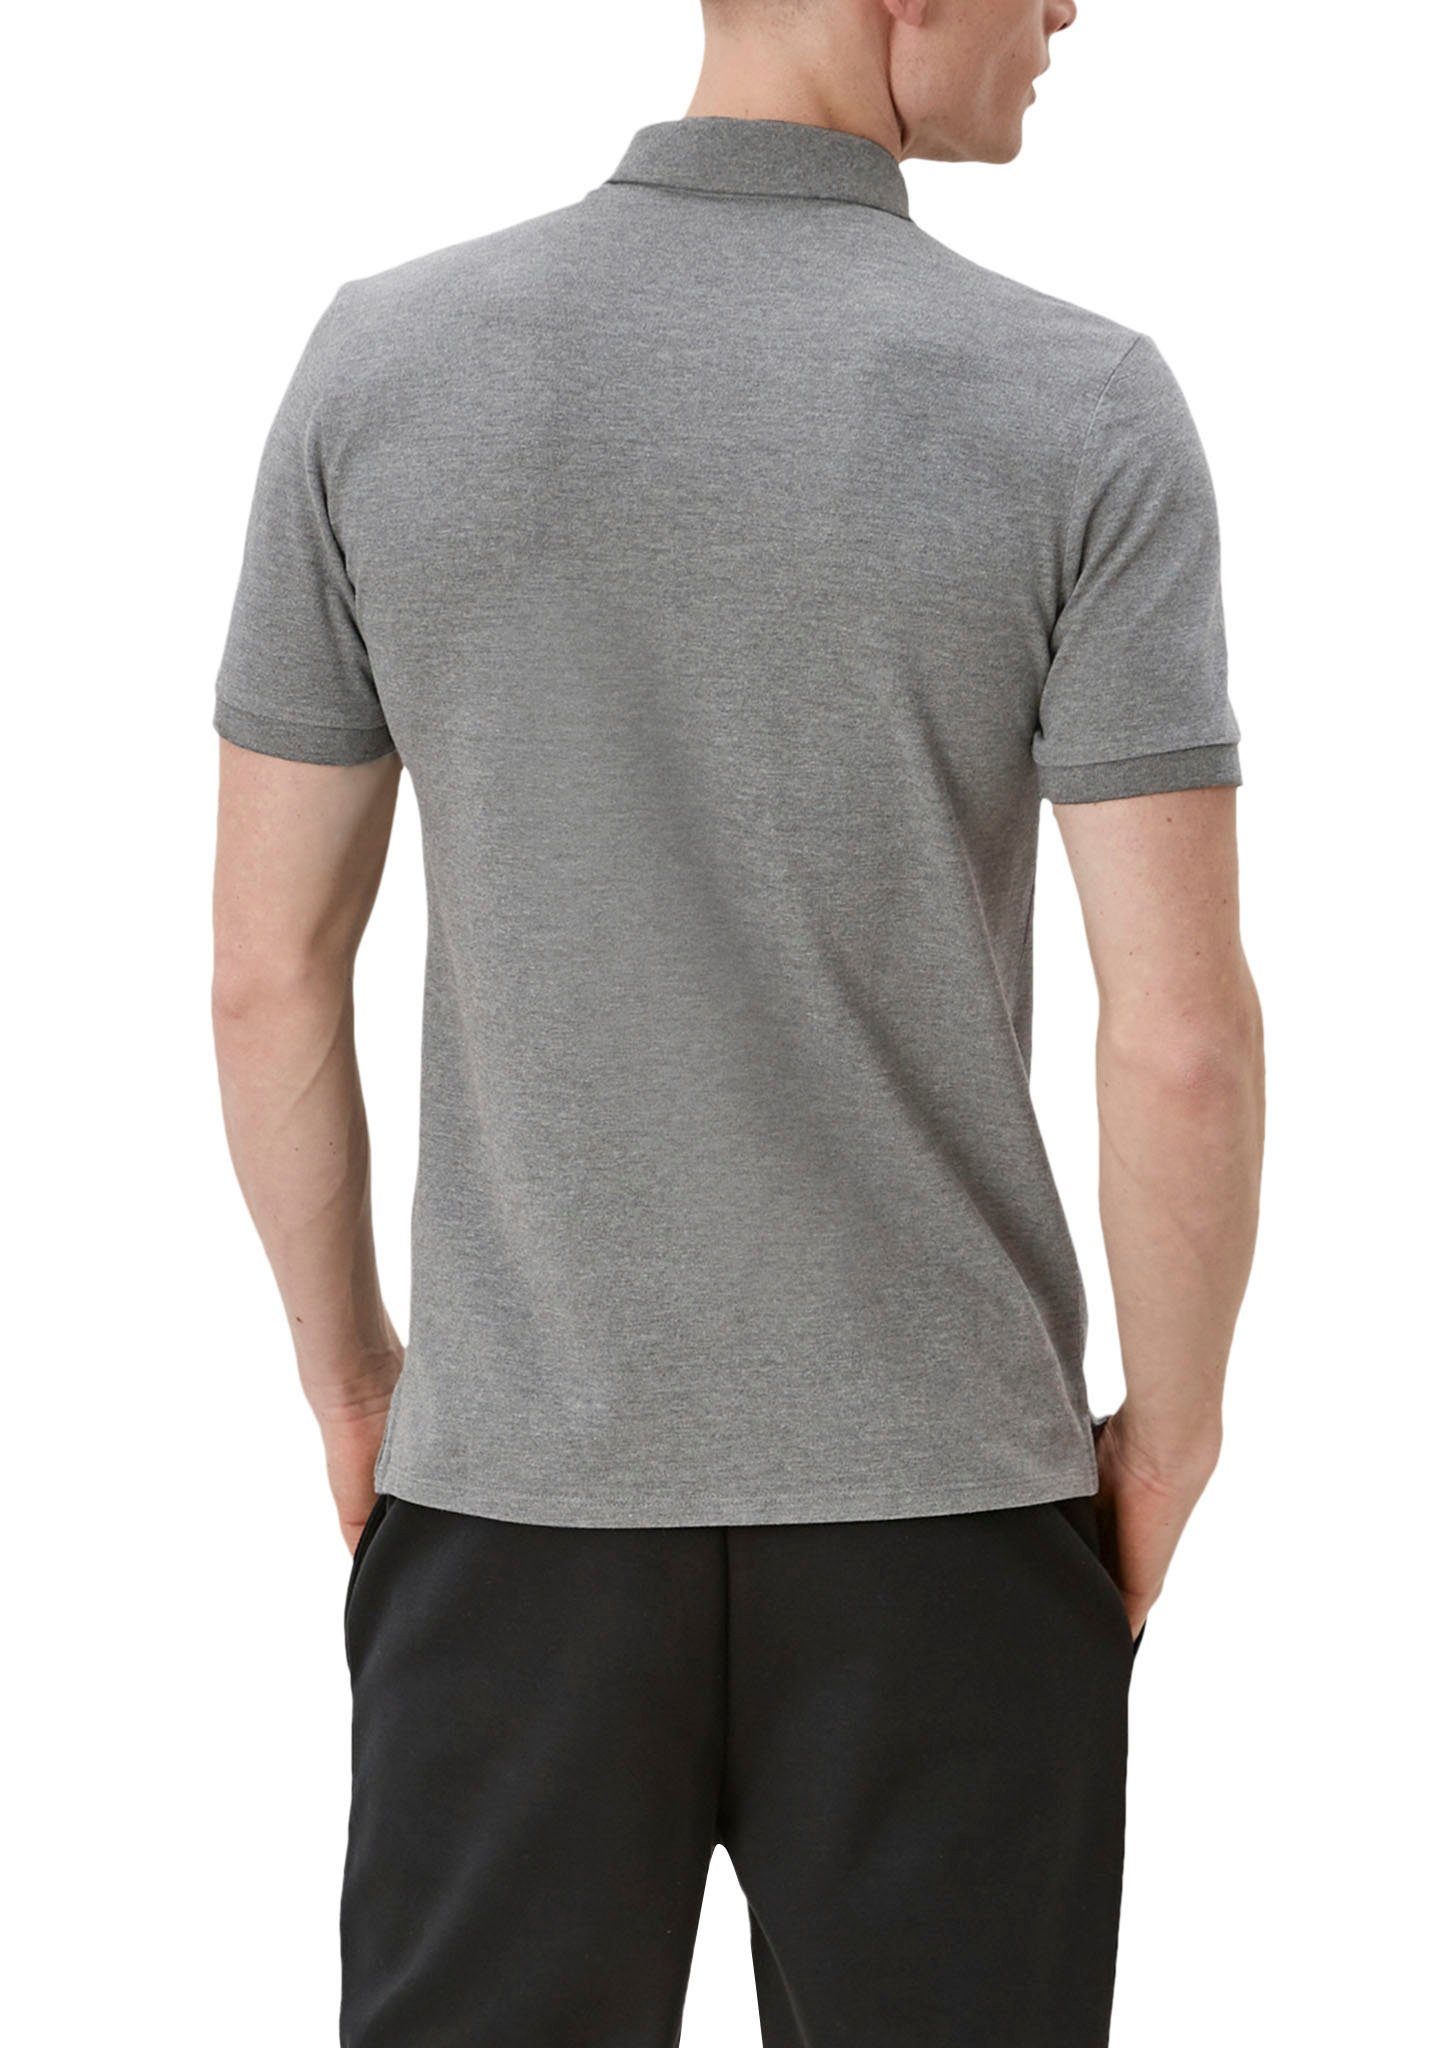 QS Poloshirt den grey/black Seiten an Einschnitte